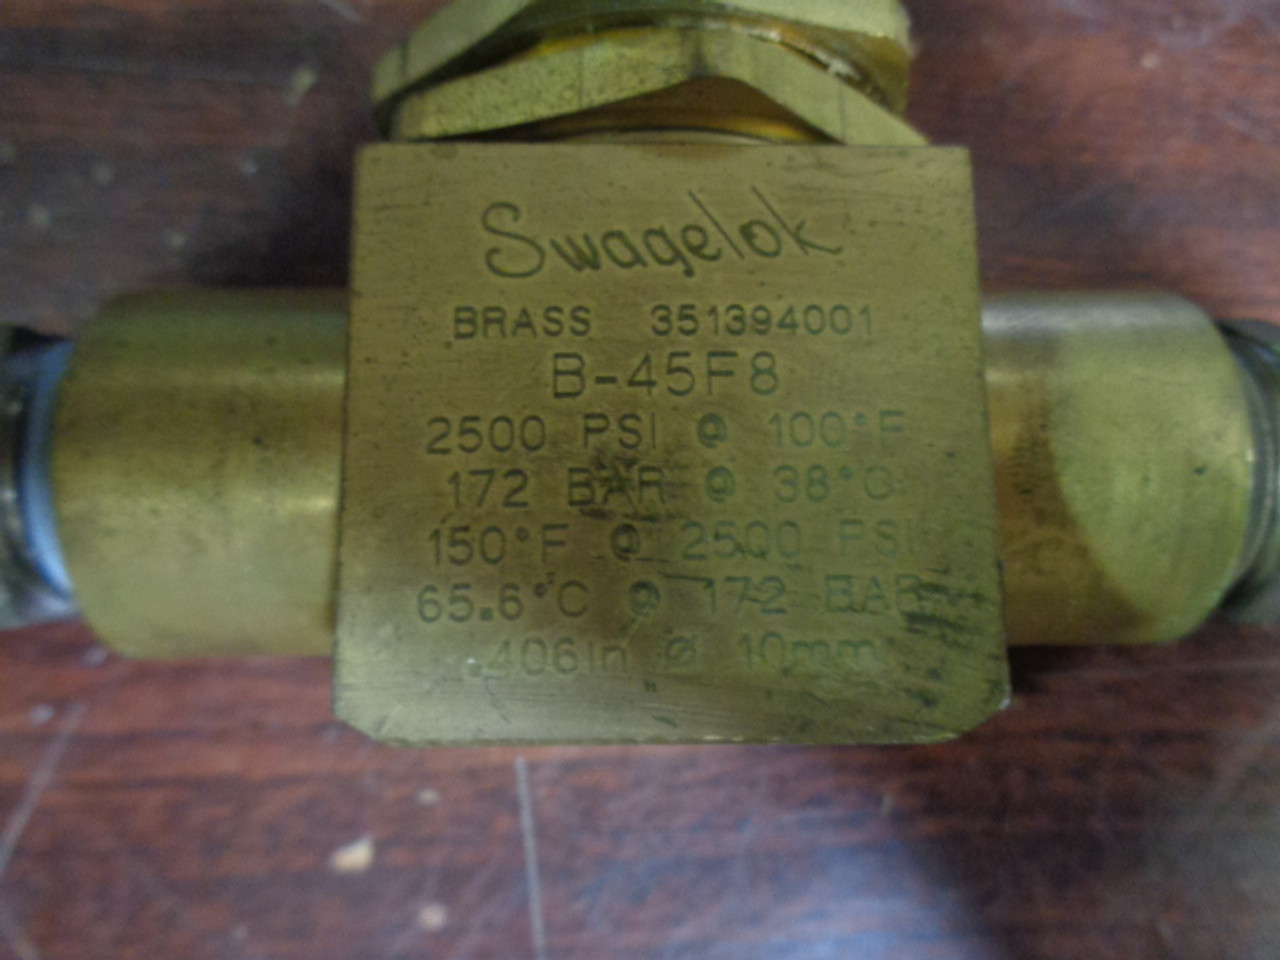 Swagelok B-45F8 Brass Valve - JMW Enterprises